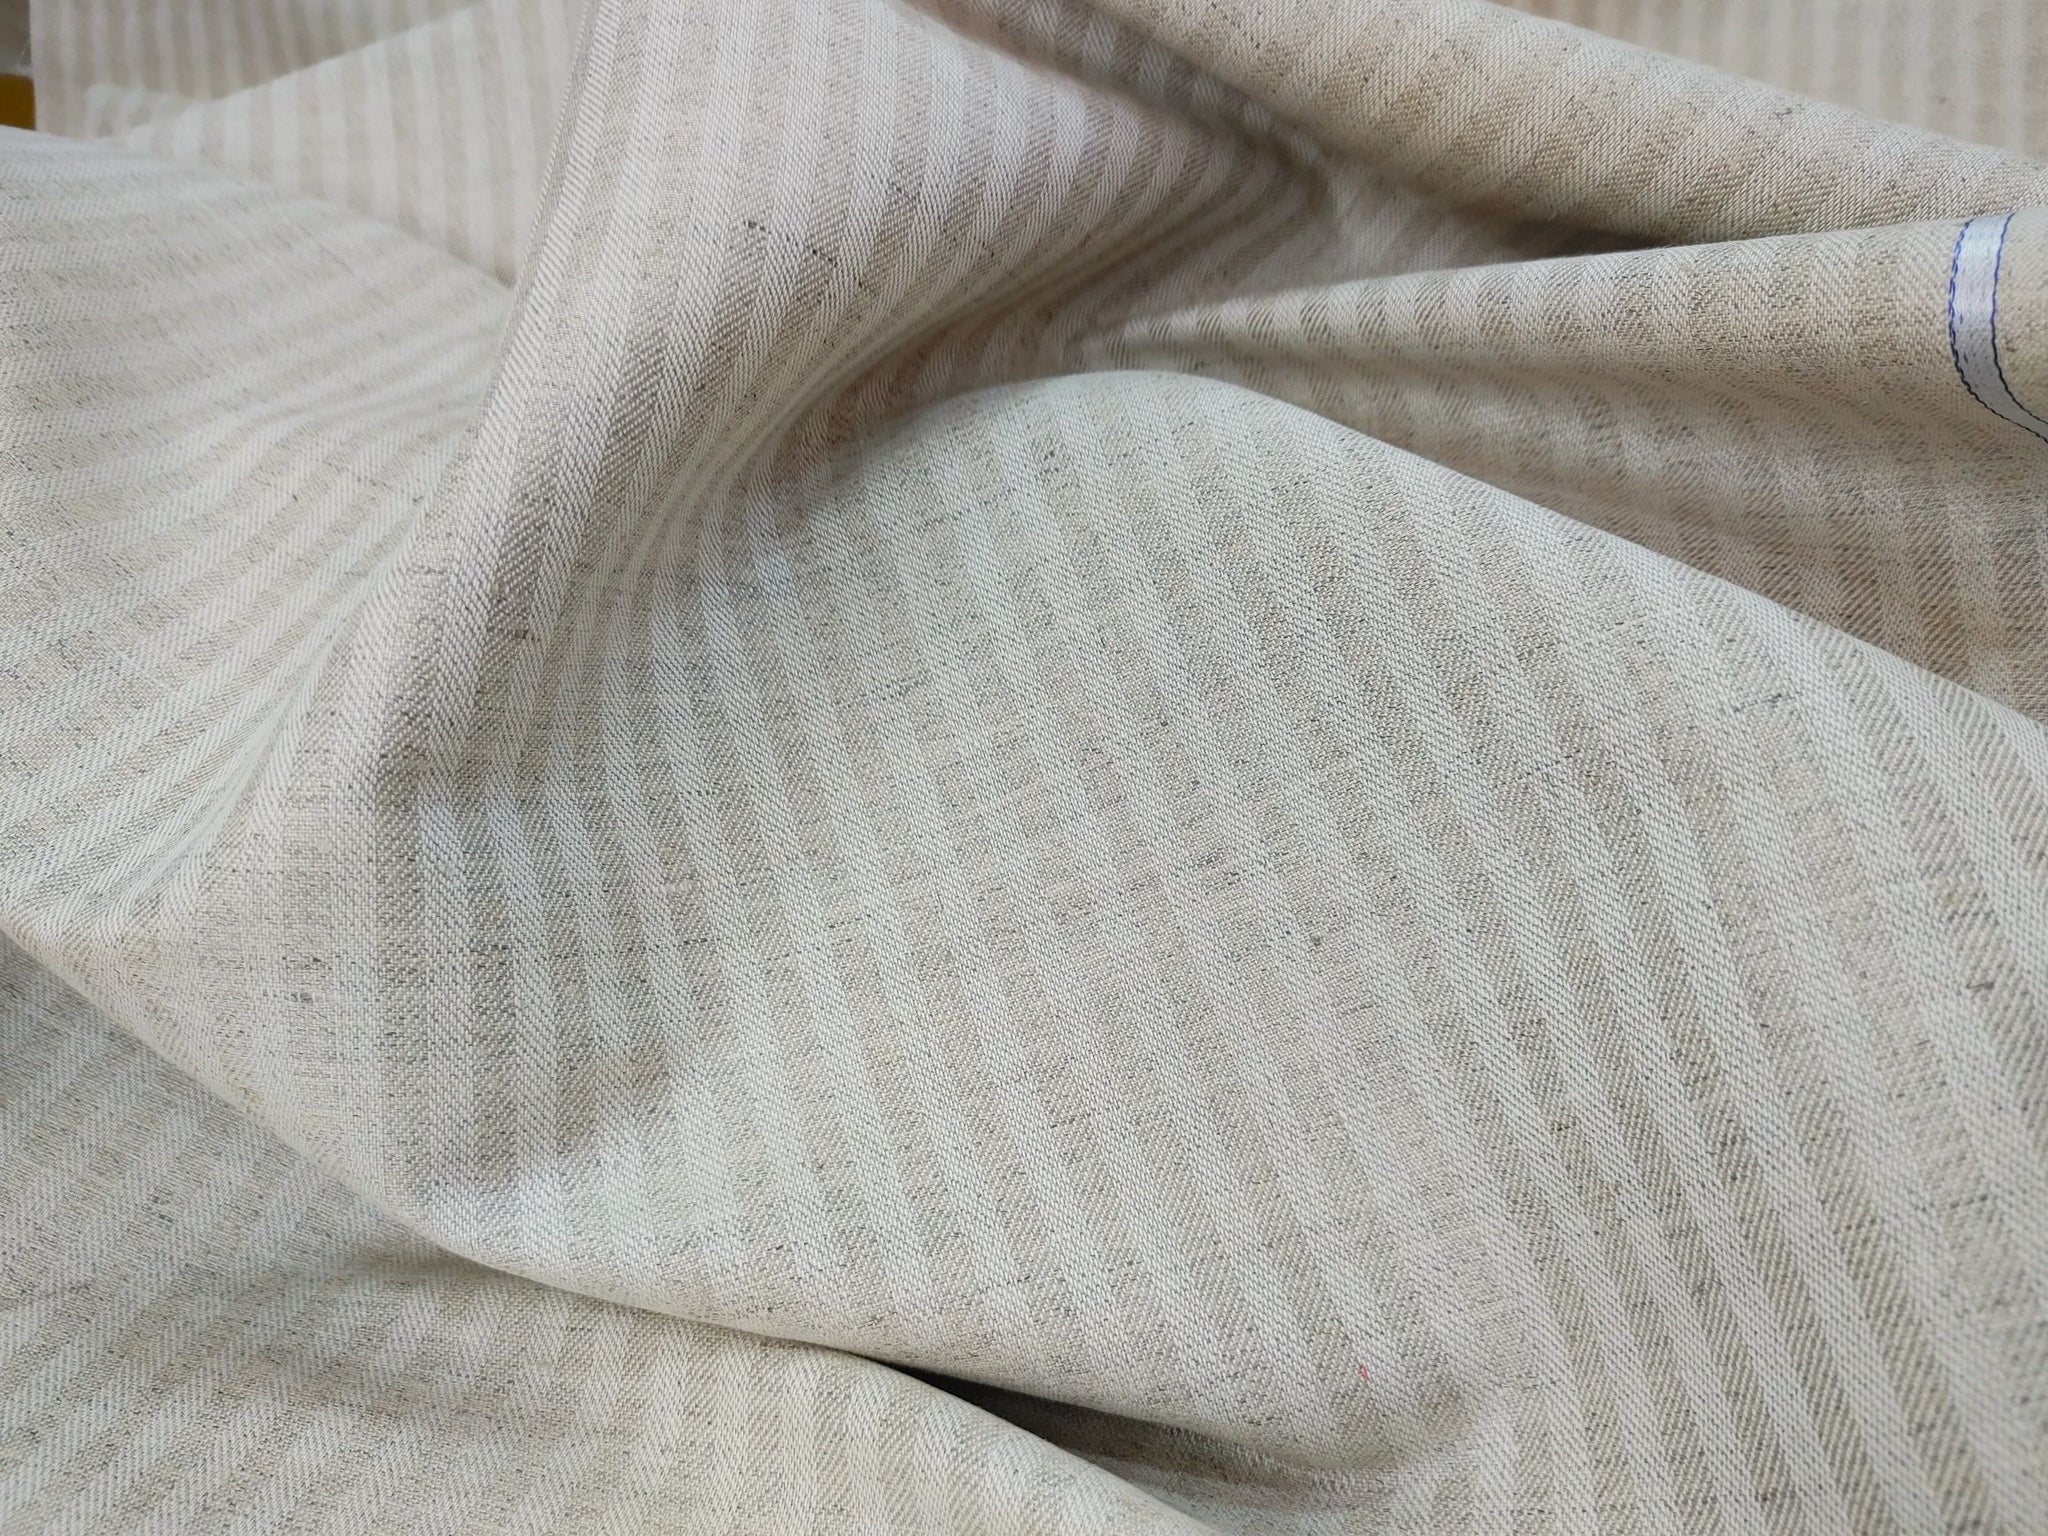 natural fabric material